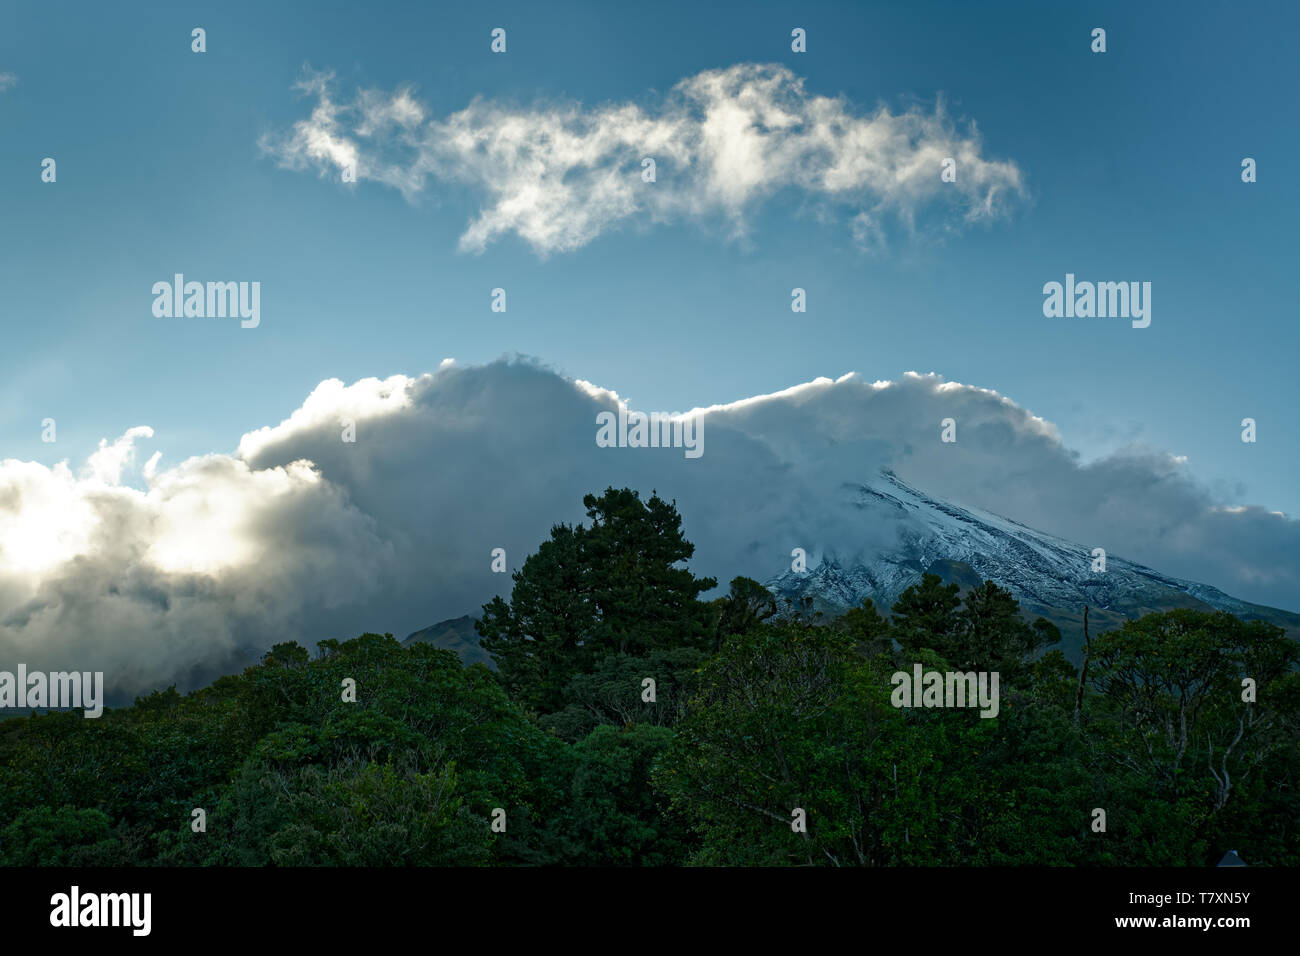 Mount Taranaki, vulcano nell isola del nord della Nuova Zelanda, per la maggior parte il picco è coperto dalle nuvole. Foto Stock